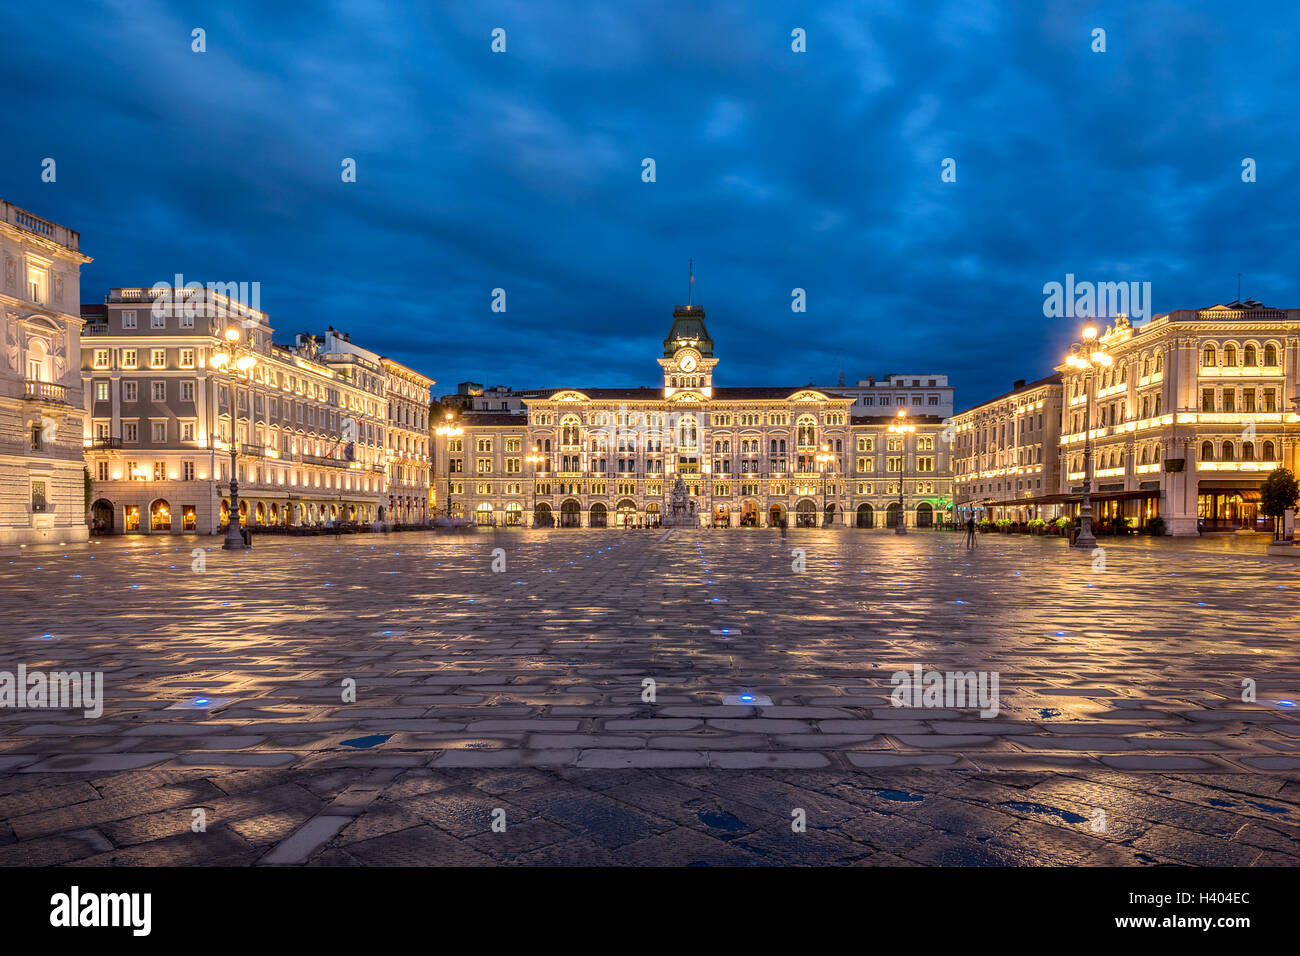 The Piazza Dell Unita D'Italia in Trieste Stock Photo